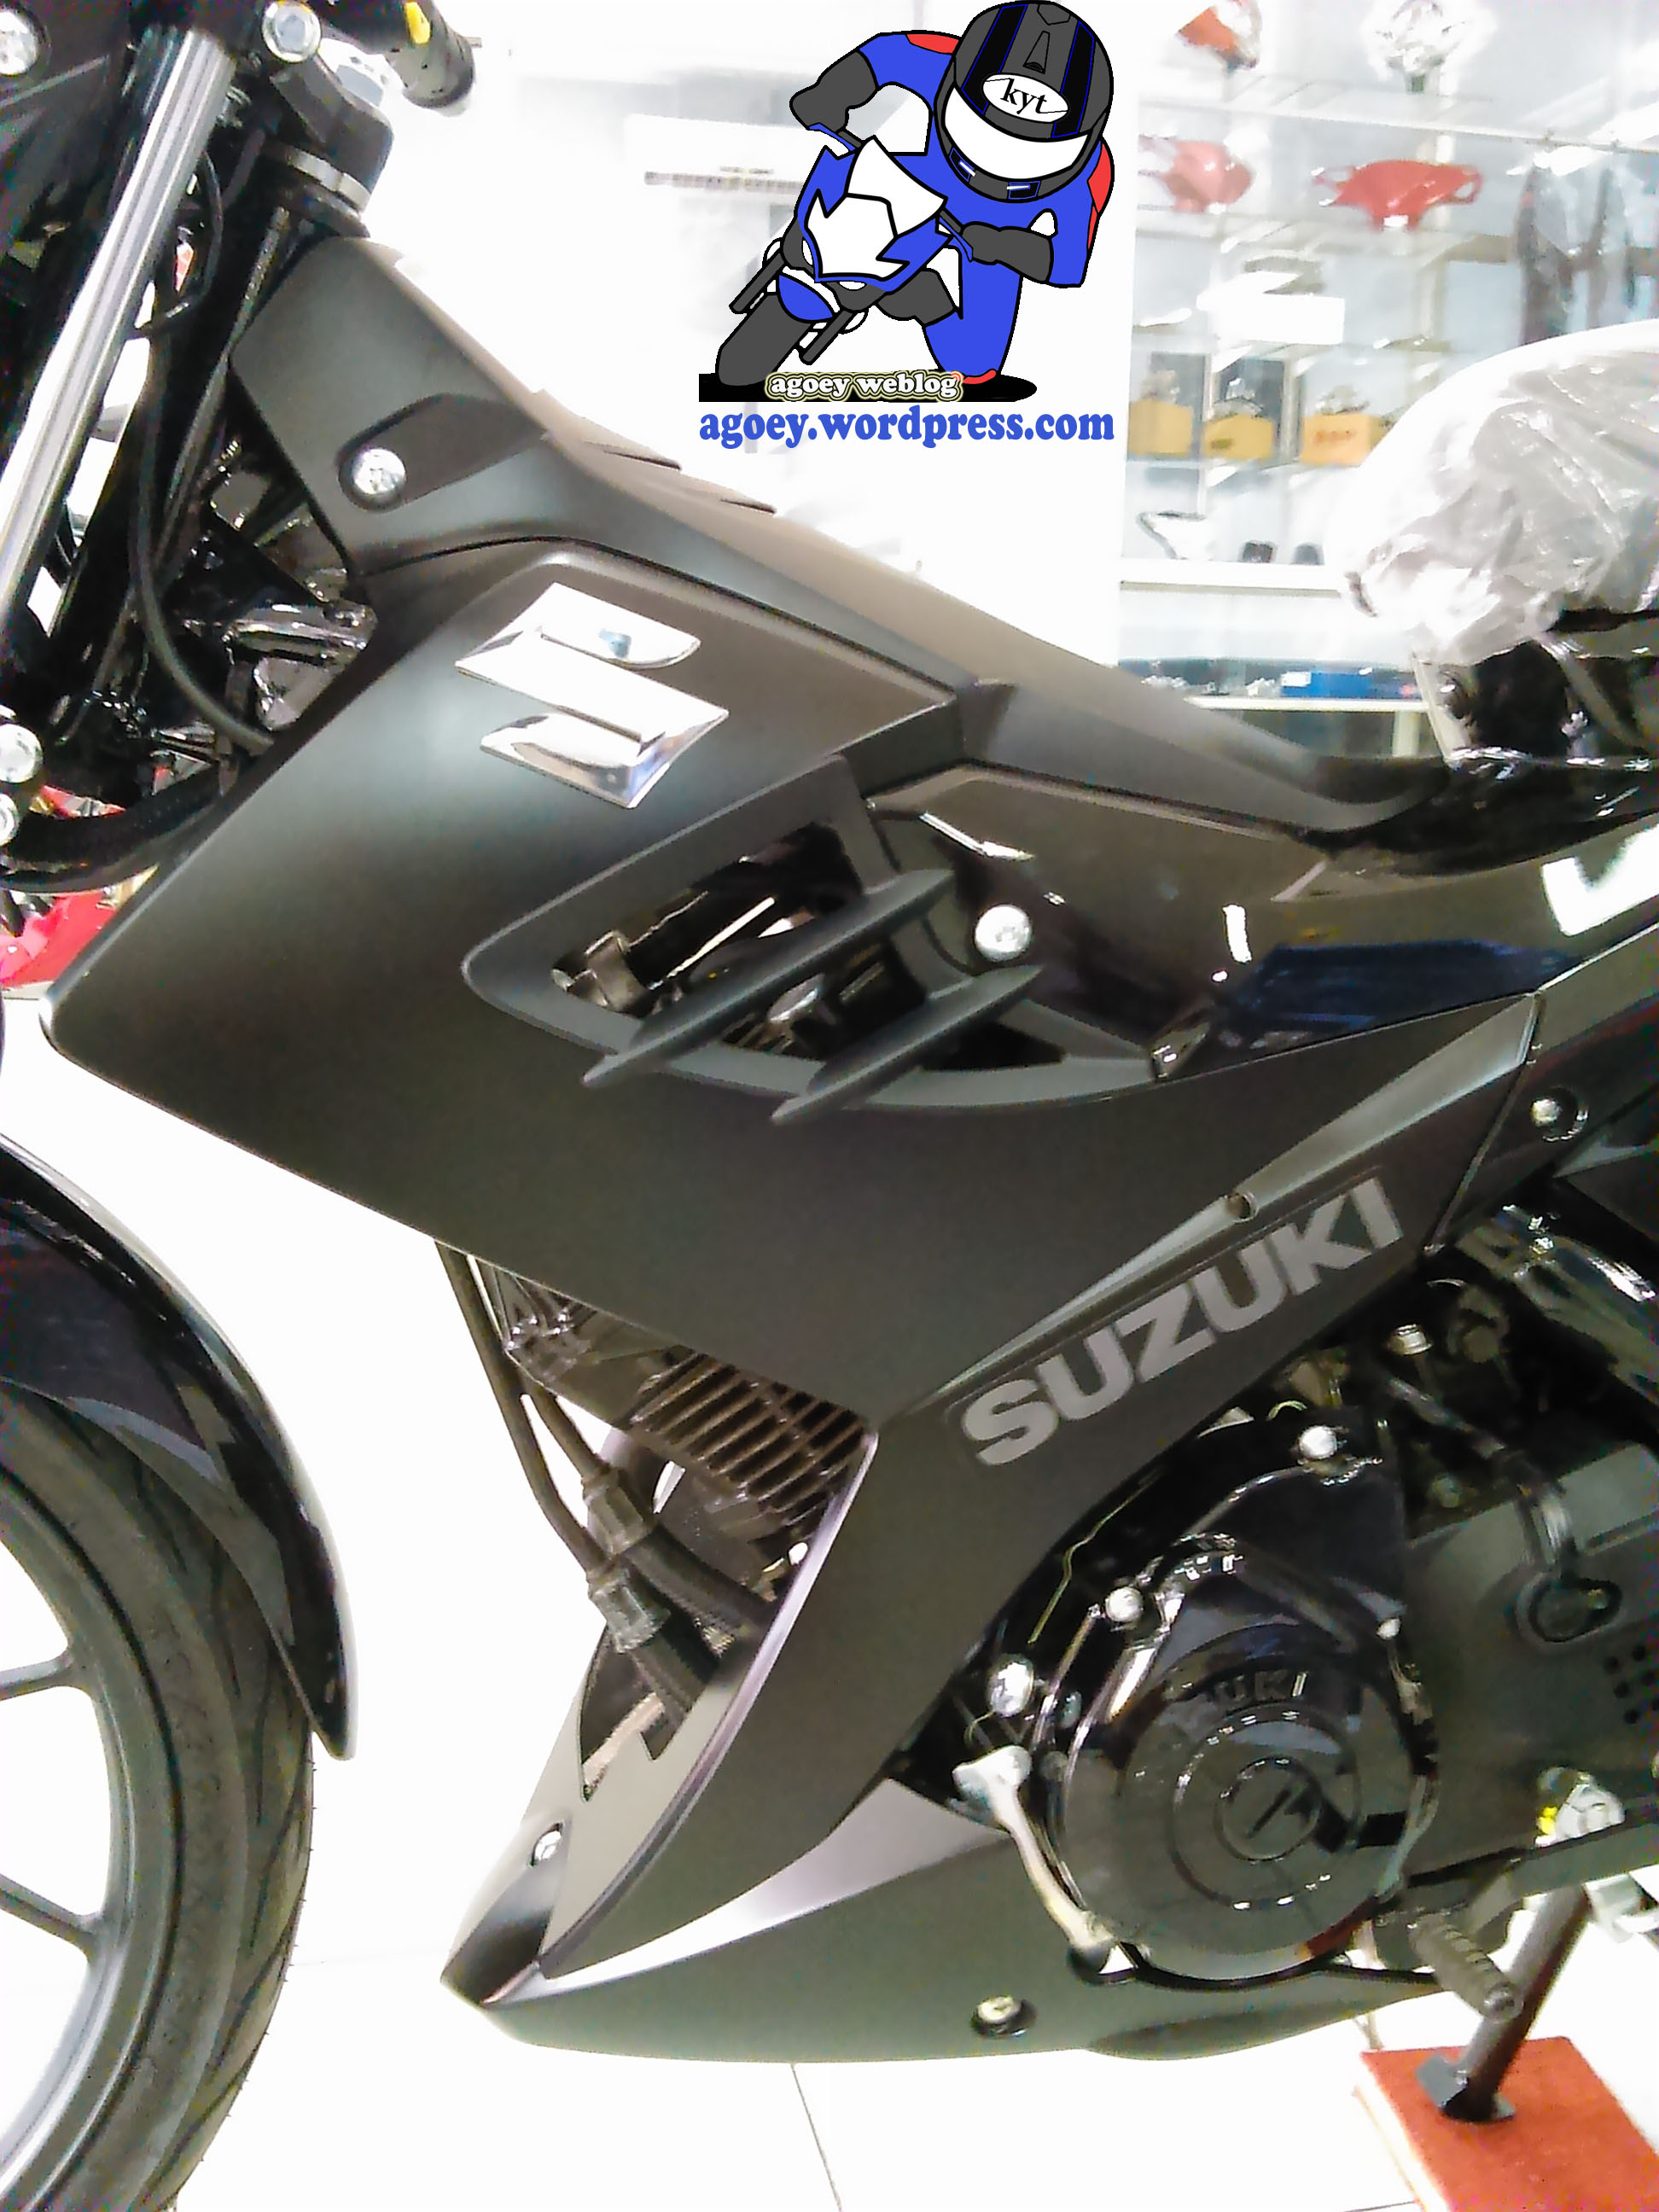 Suzuki Satria Black Predator 9 Agoeys Weblog